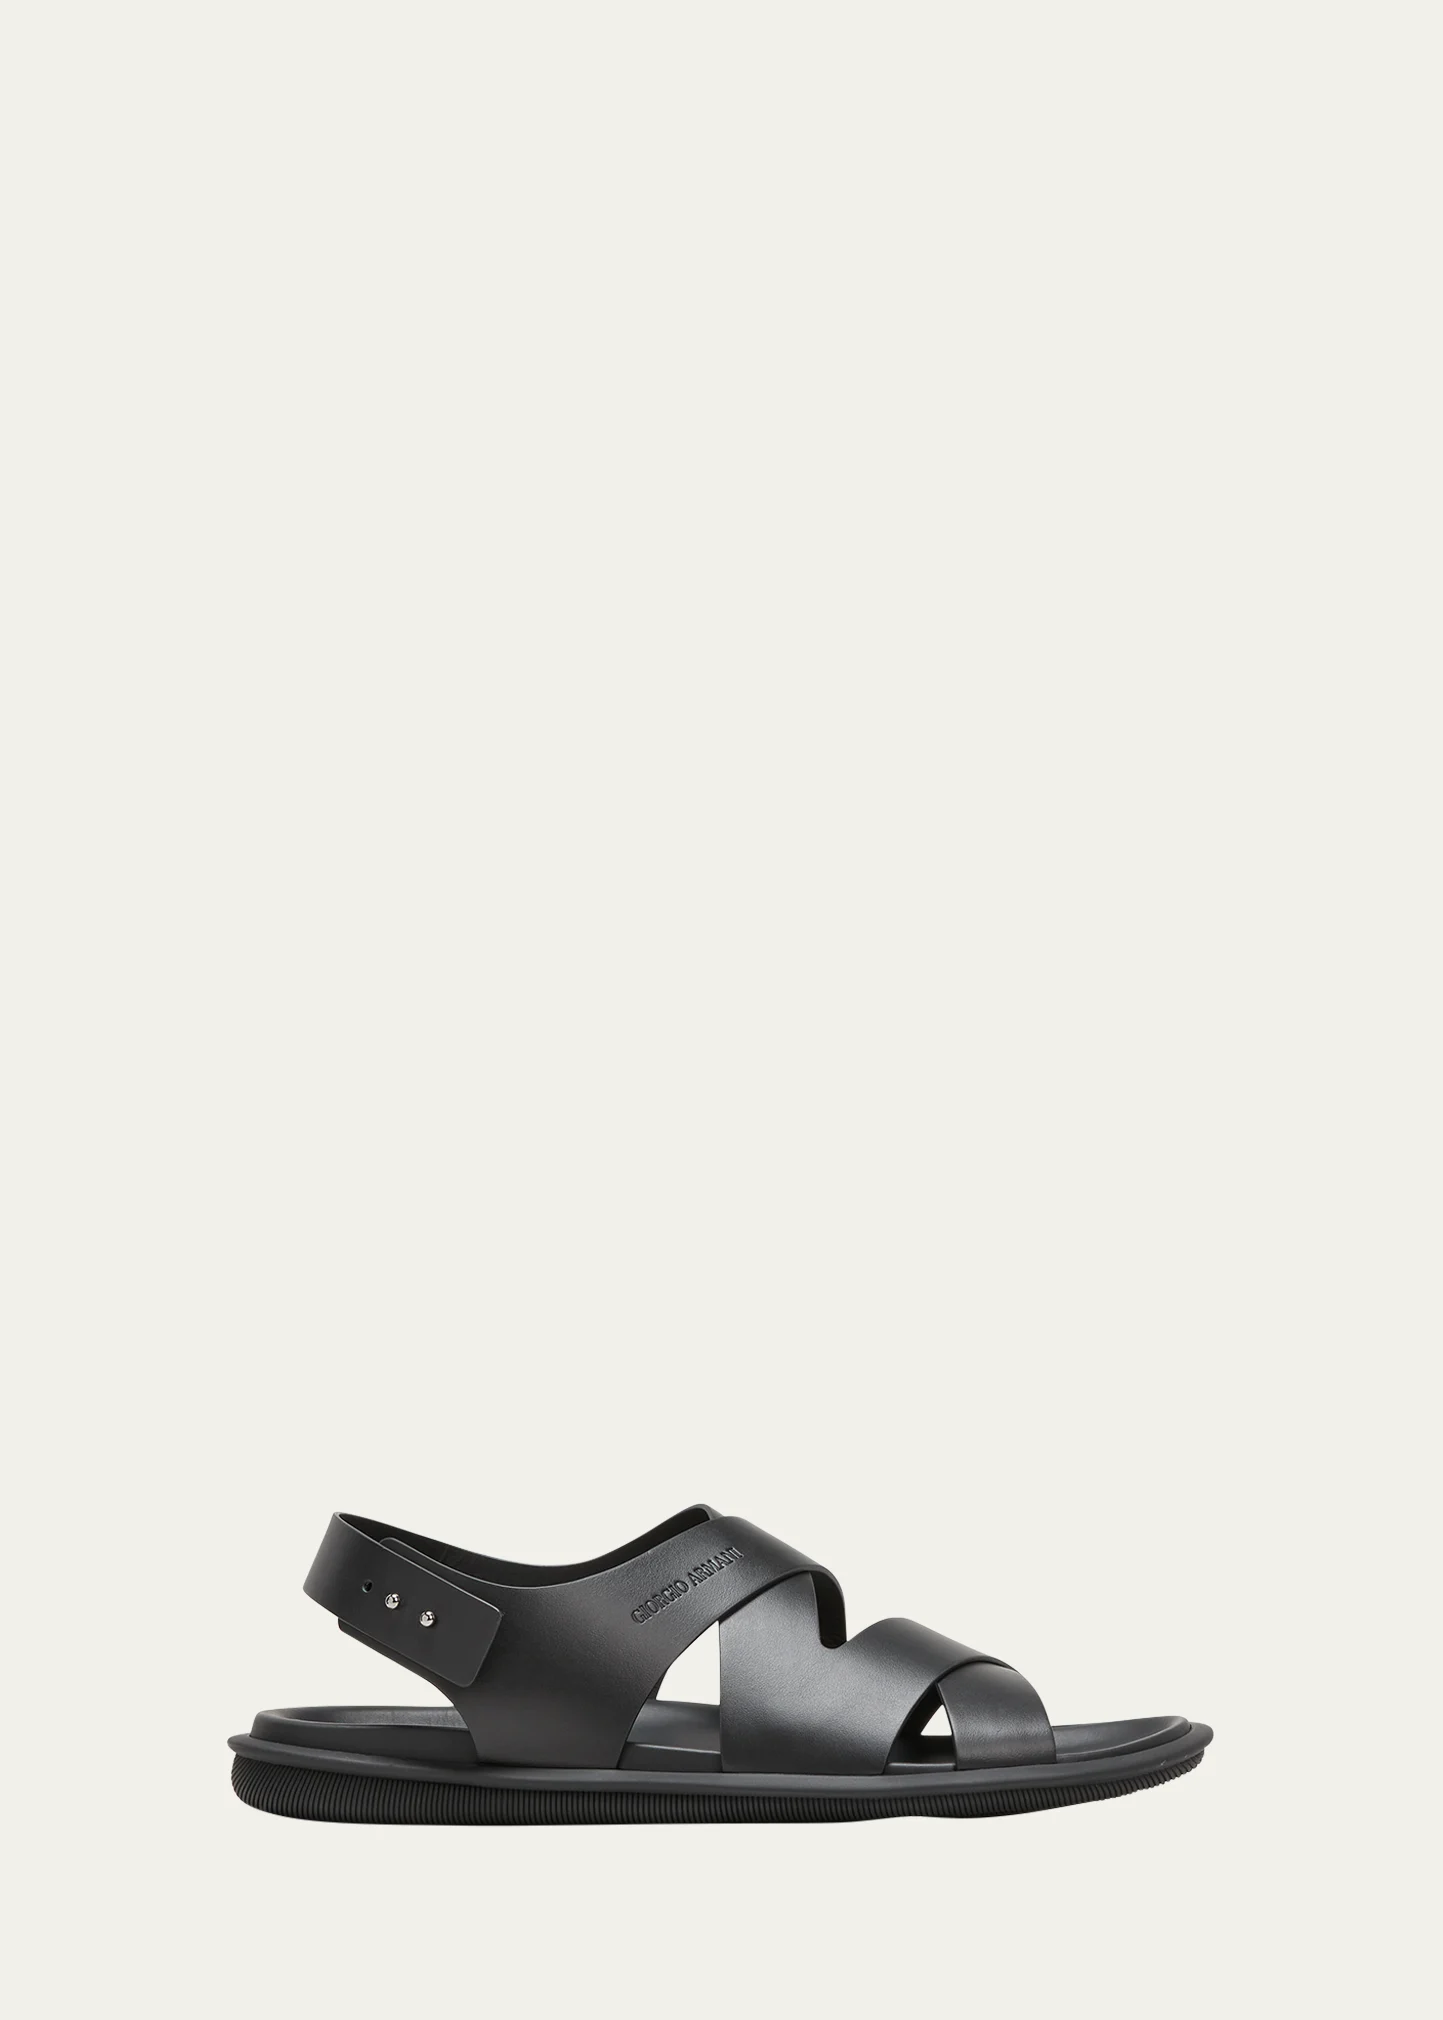 GIORGIO ARMANI Men's Calf Leather Sandals